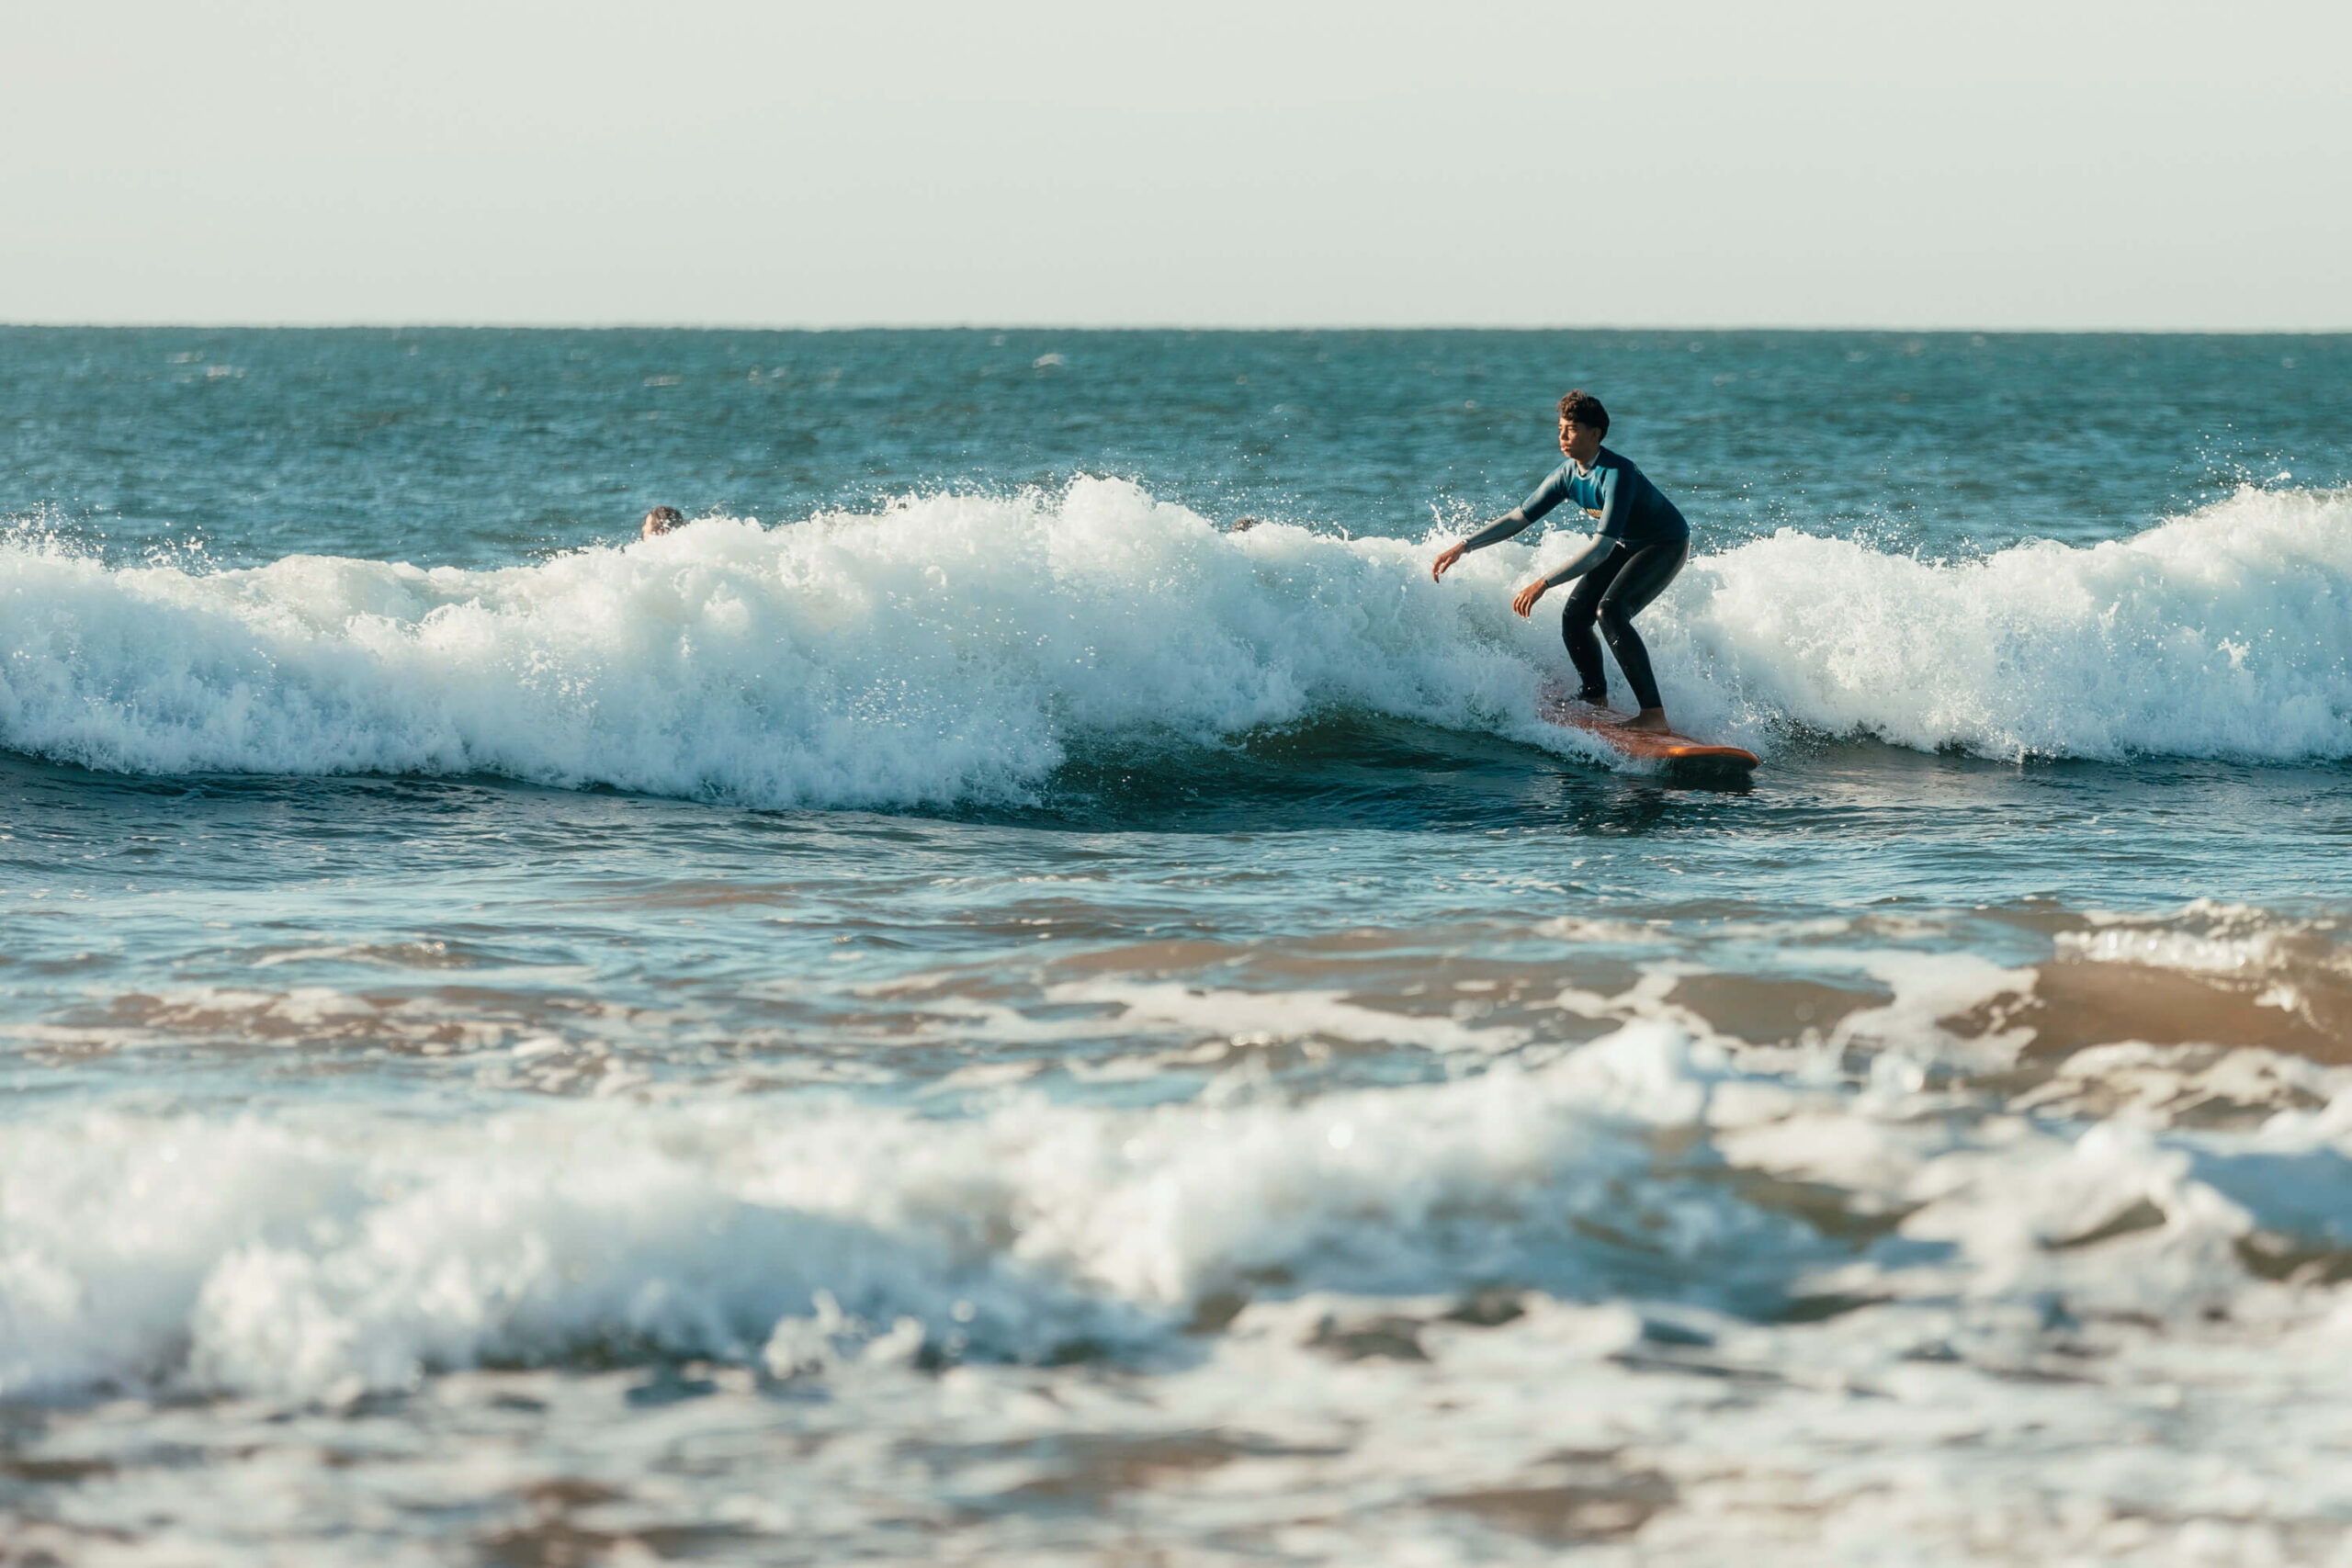 Surf camp lisbon - Surfer in the wave